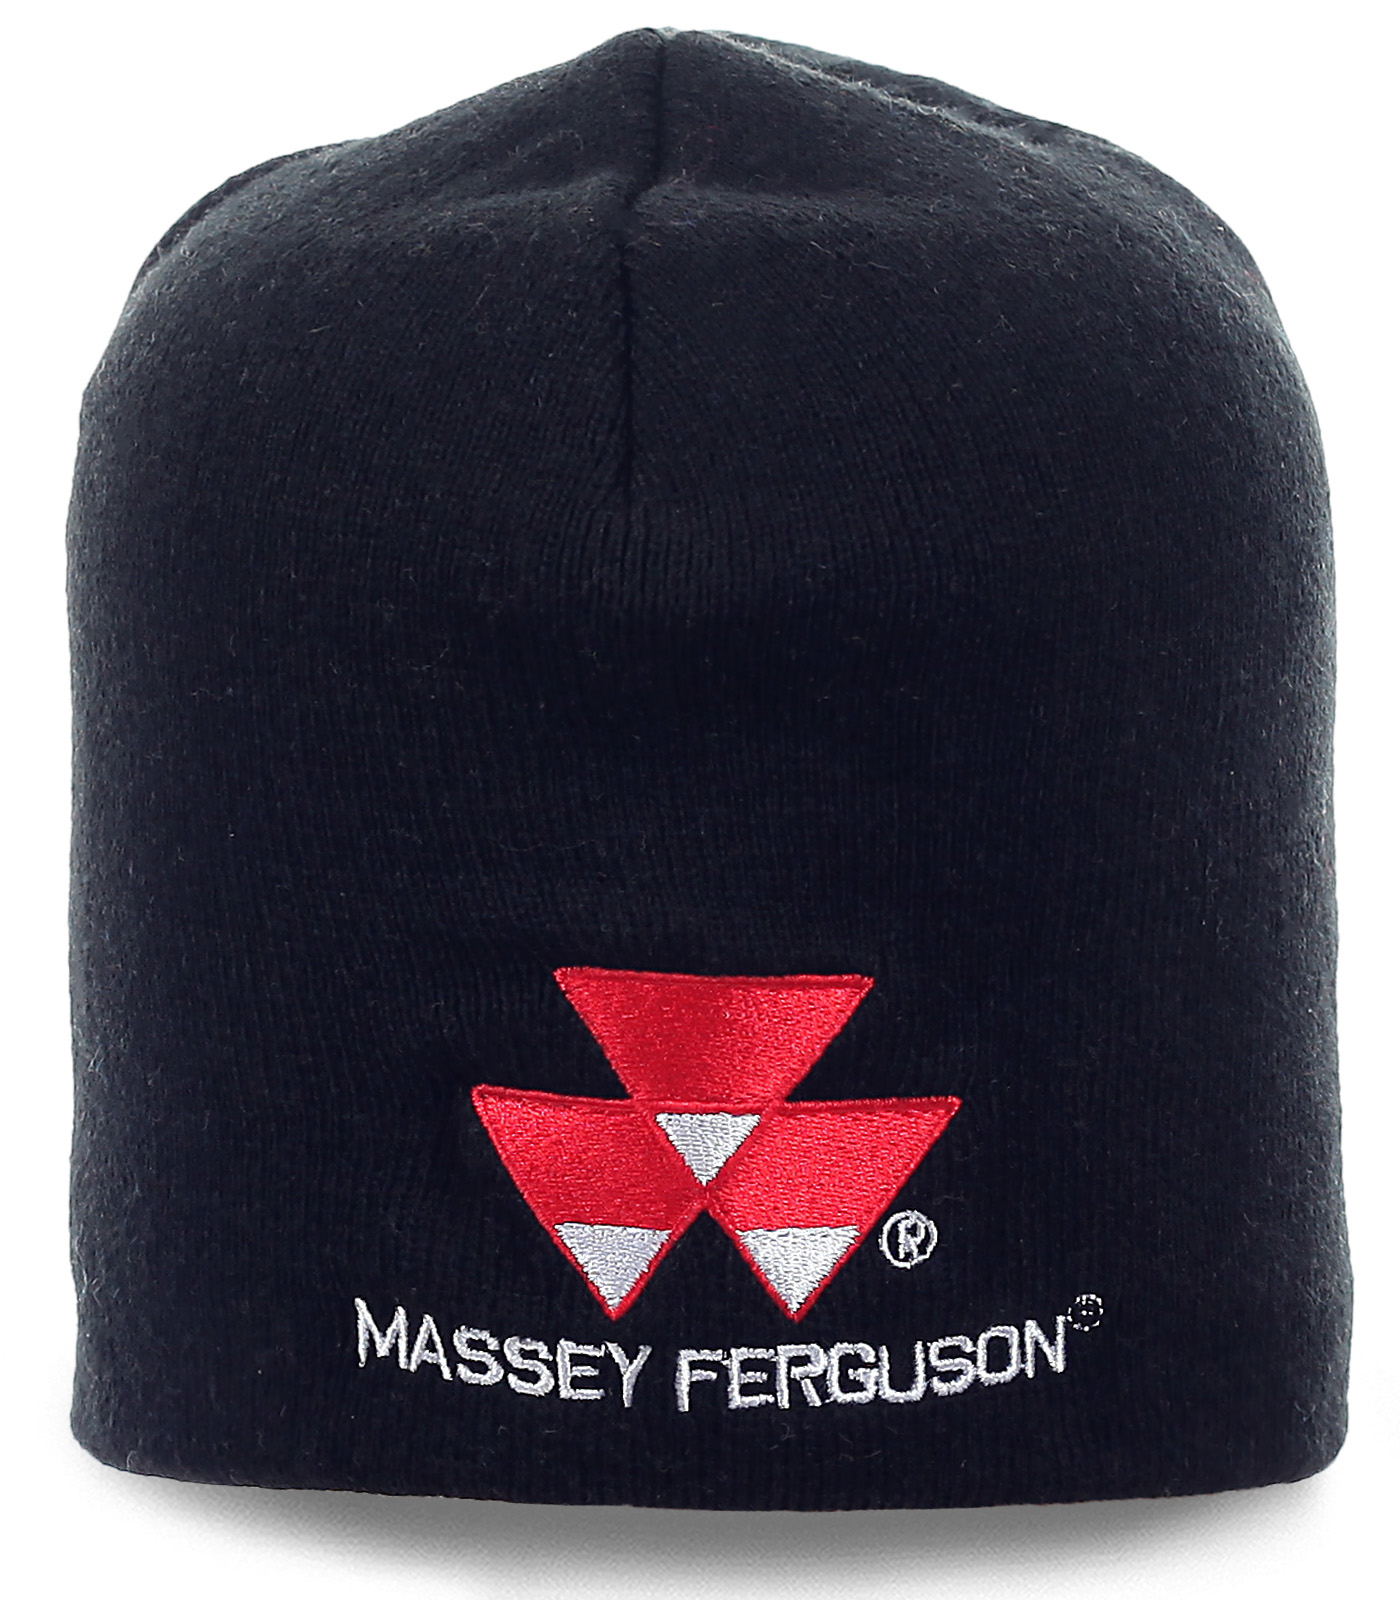 Заказать недорого мужские шапки Massey Ferguson